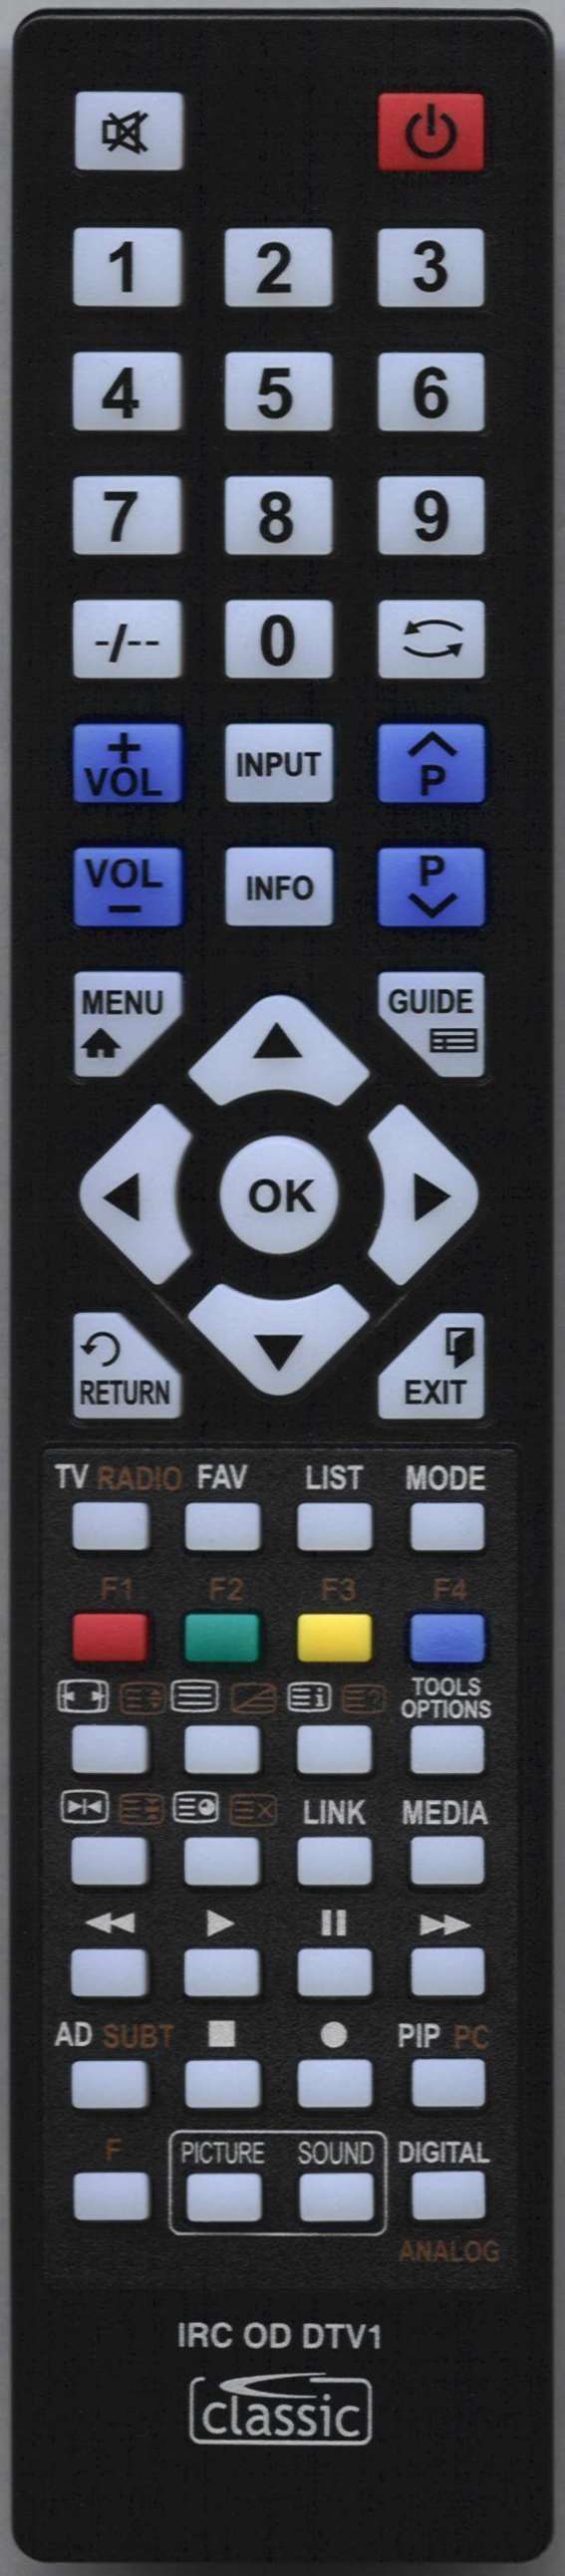 Orion R56-0972 Remote Control